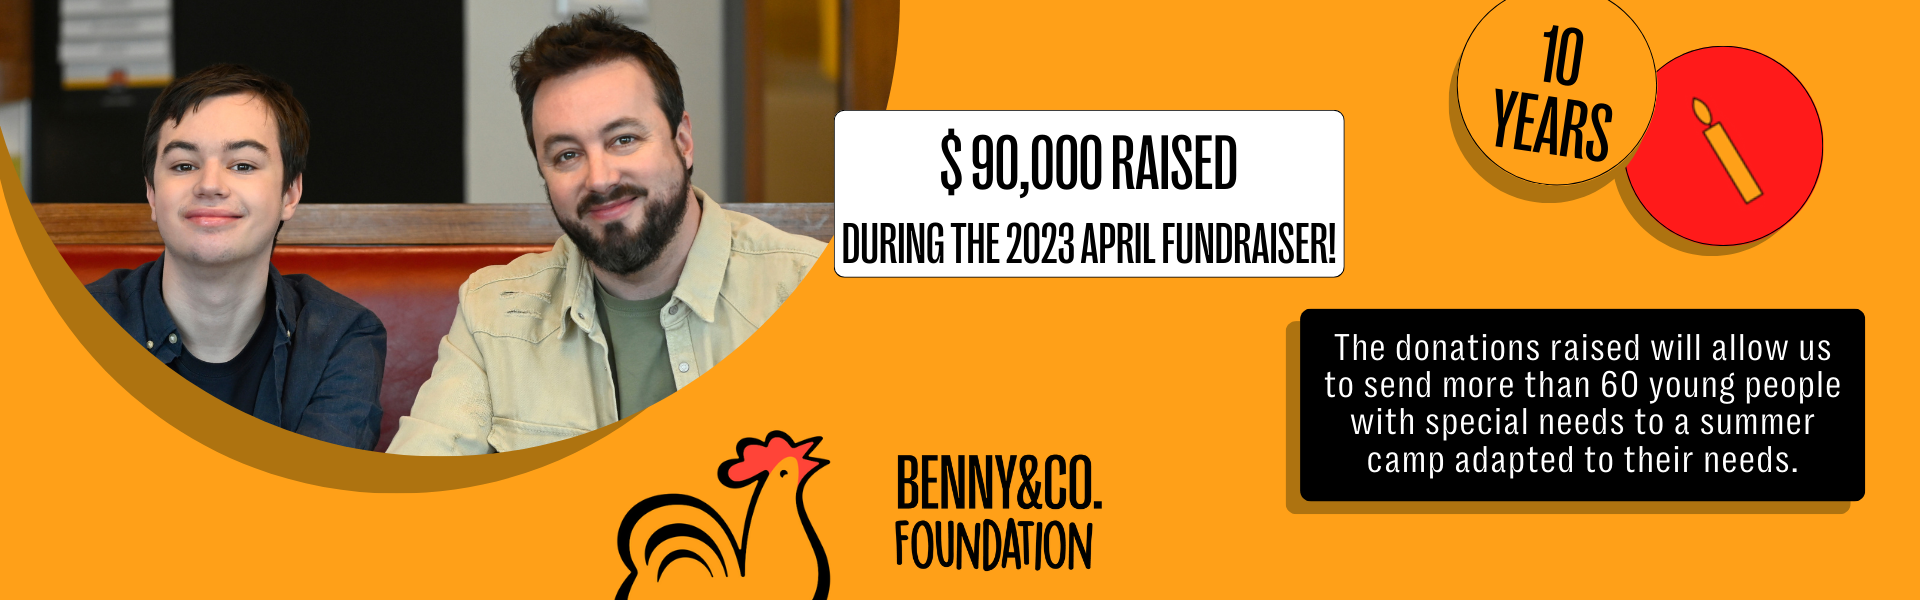 Benny&Co. Foundation - Benny & Co.